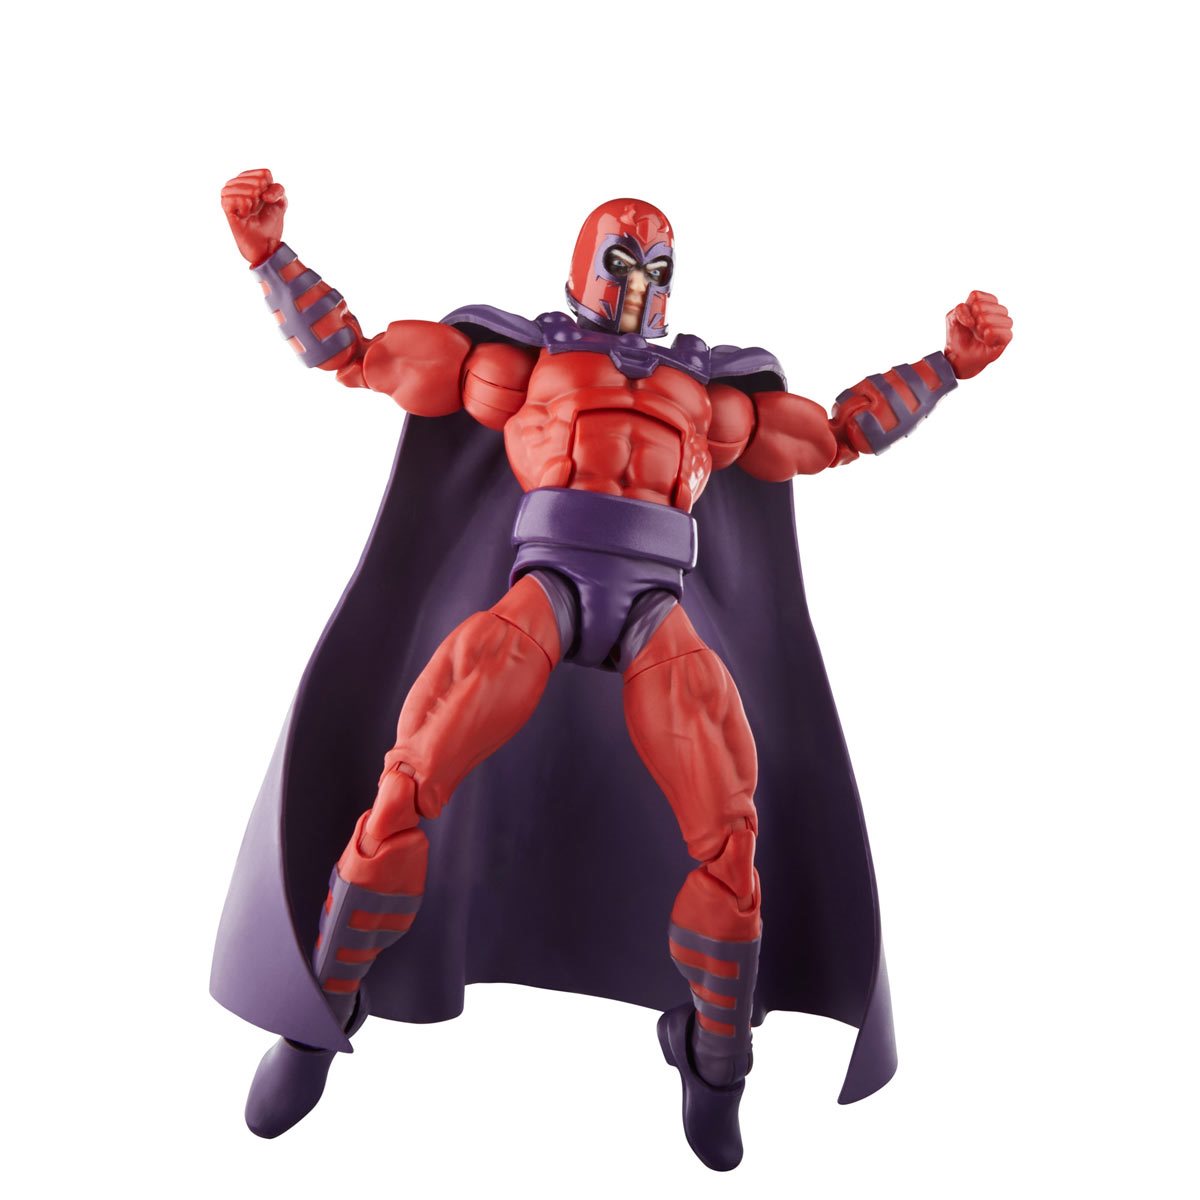 X-Men 97 Marvel Legends Magneto 6-inch Action Figure